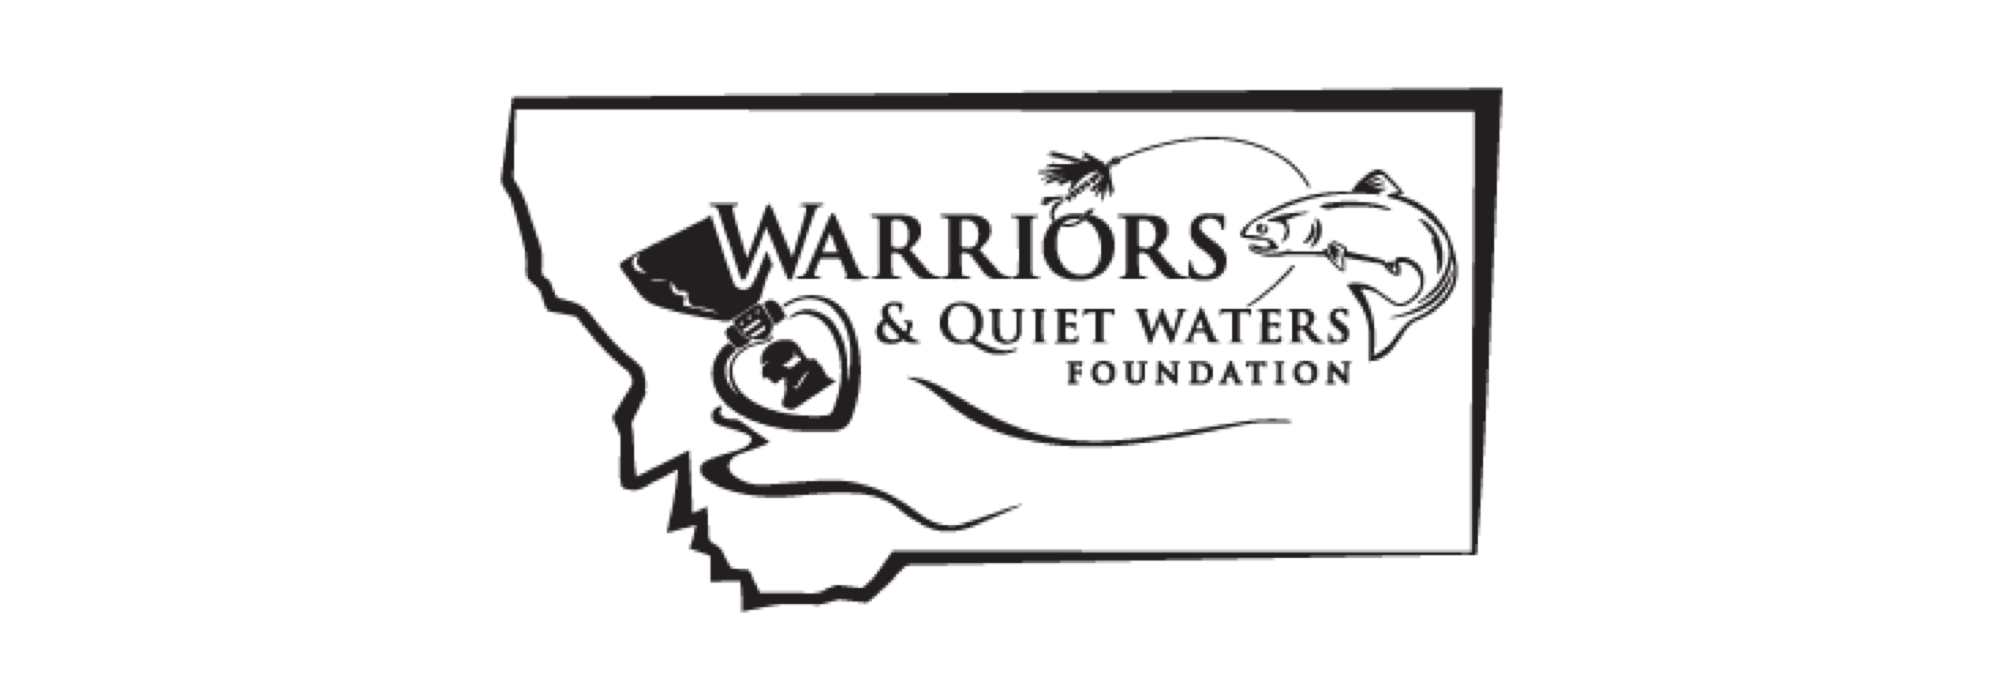 Warriors & Quiet Waters